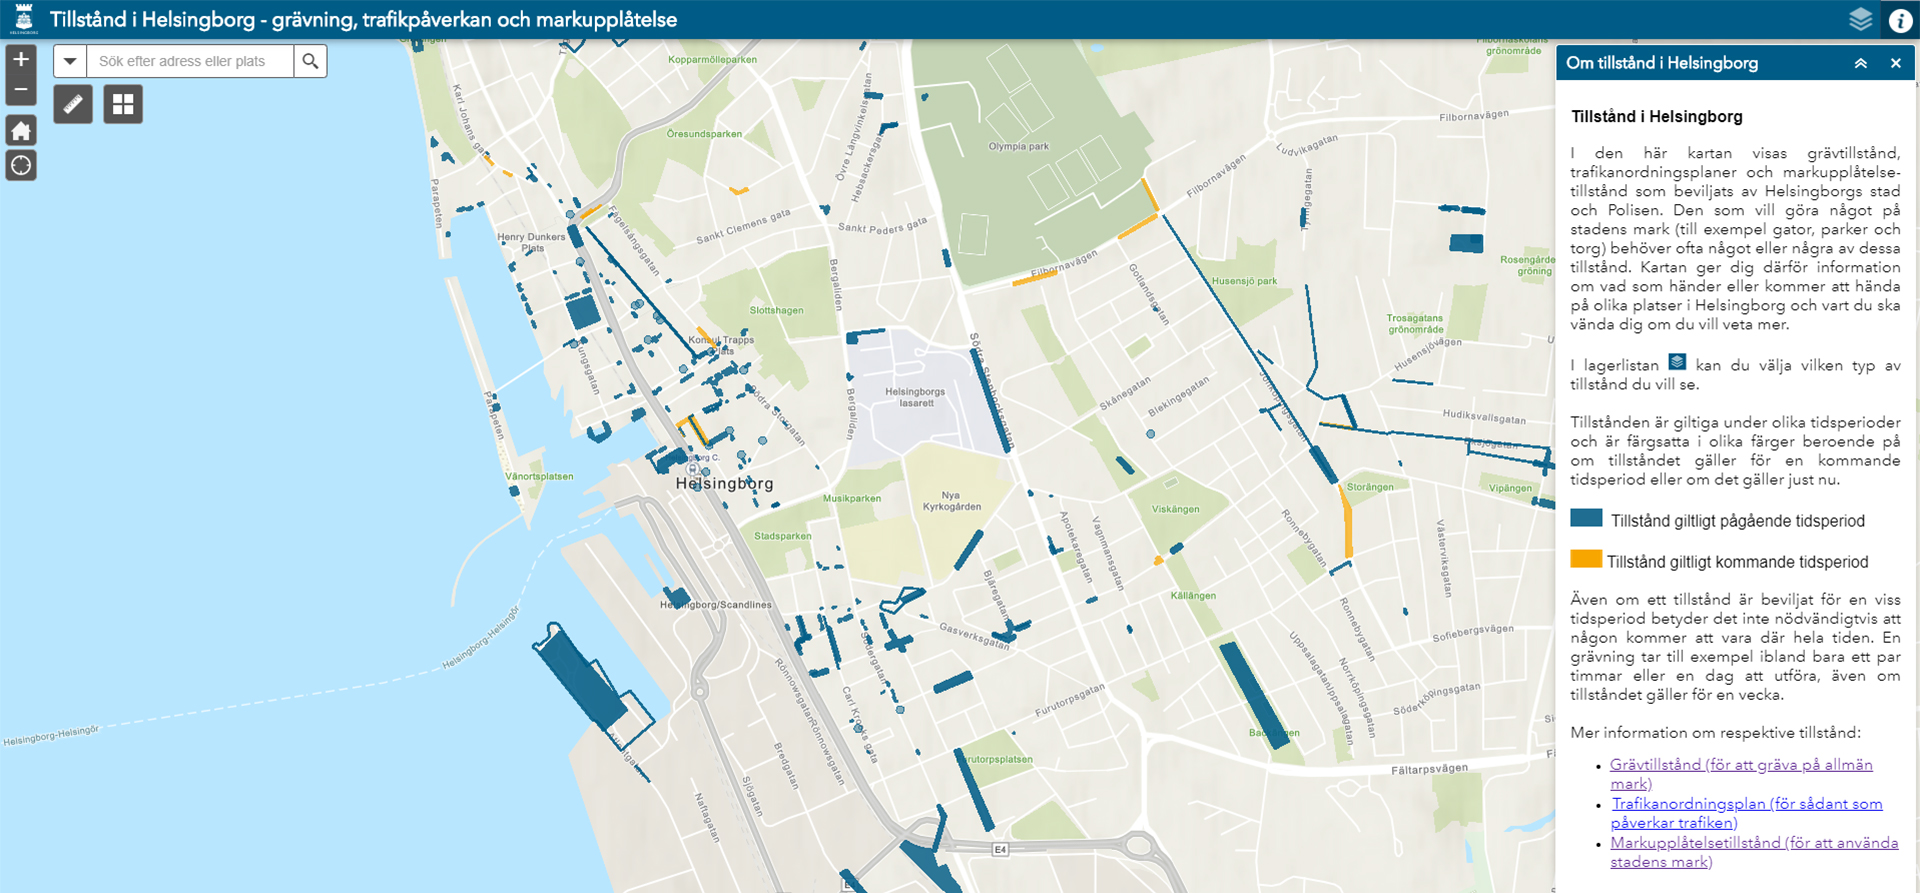 Till kartan Tillstånd i Helsingborg - grävning, trafikpåverkan och markupplåtelse